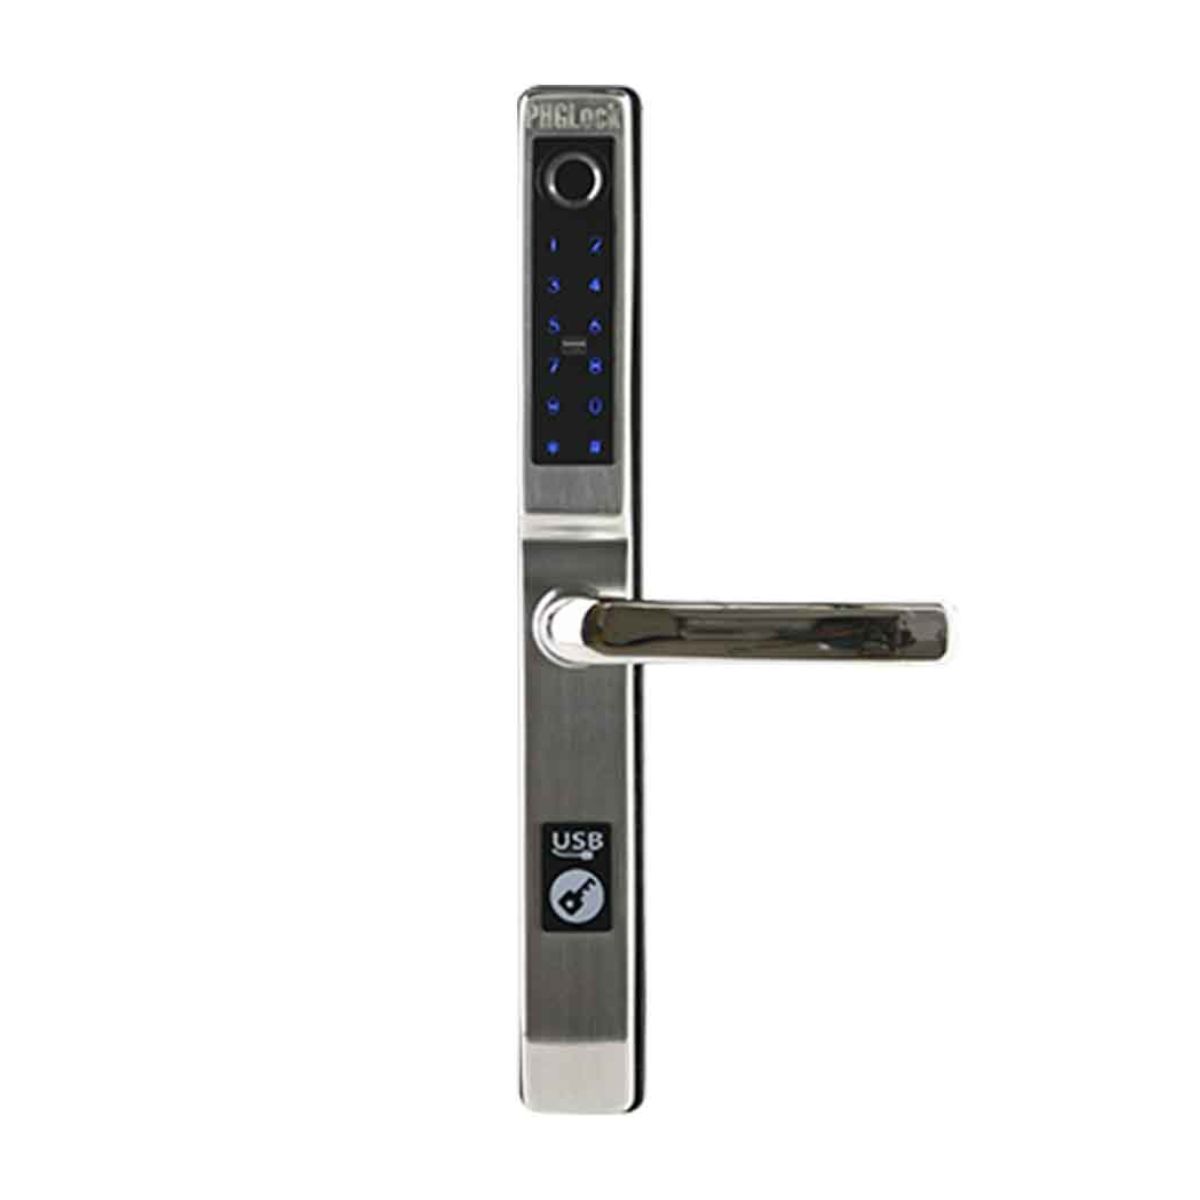 Khóa tay gạt cửa nhôm thẻ MI, mật mã, vân tay, chìa khóa cơ PHGLock FP5293 màu bạc